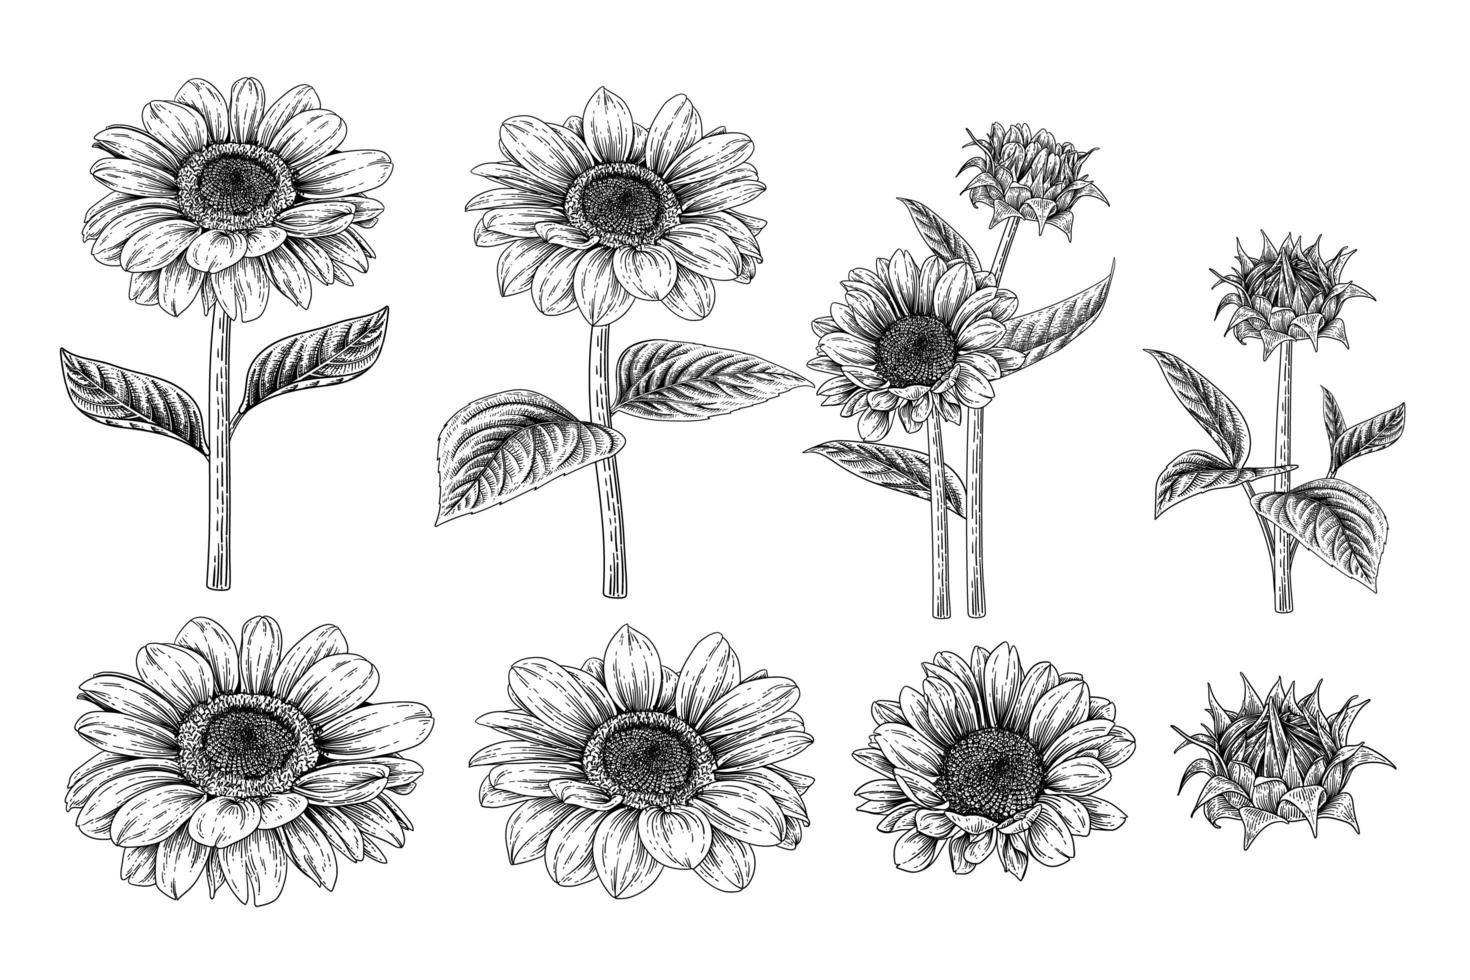 zonnebloem zeer gedetailleerde hand getrokken schets elementen botanische illustraties decoratieve set vector